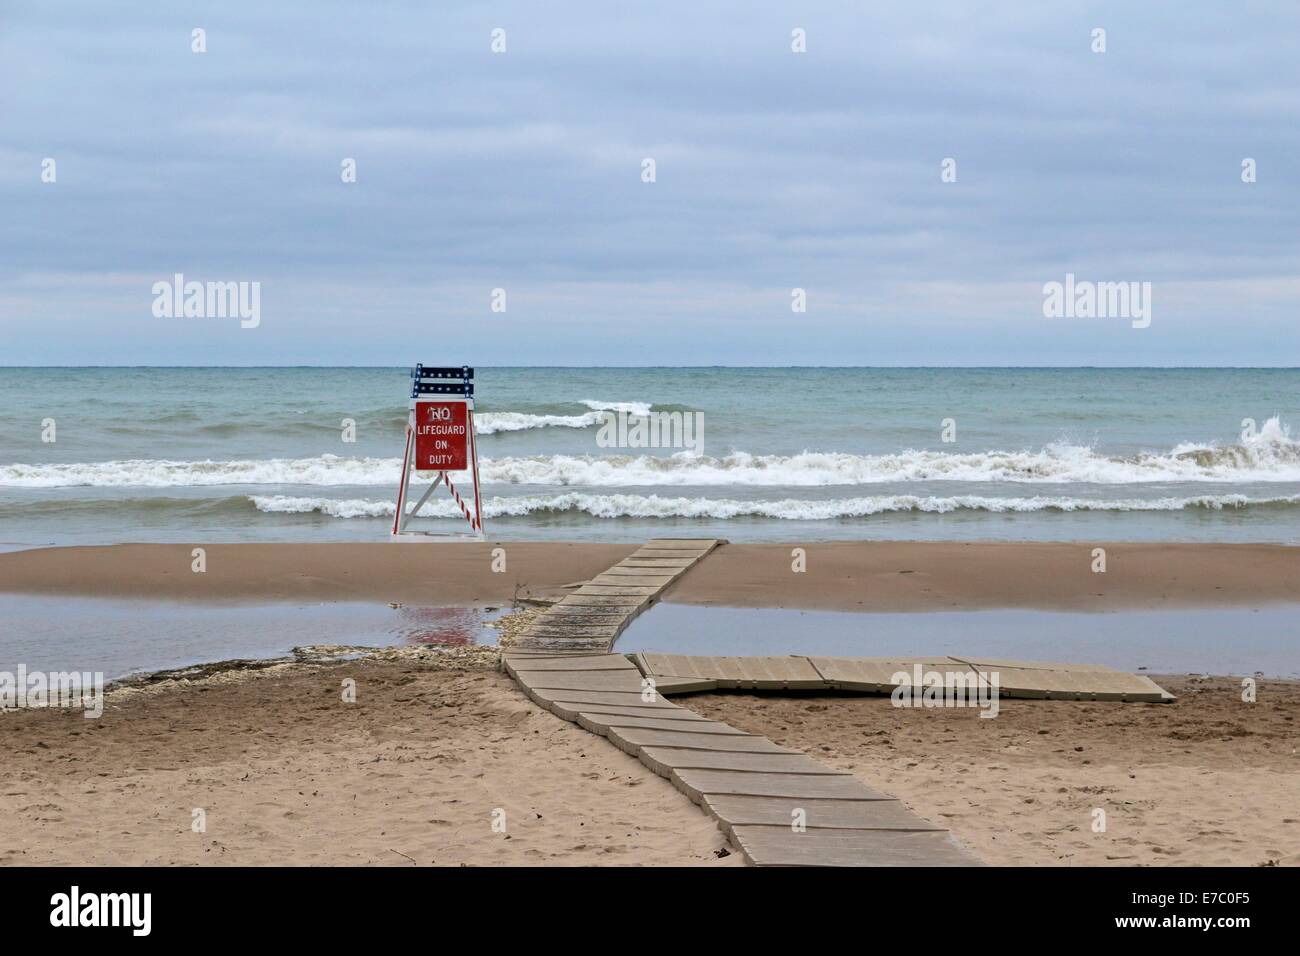 Leere Rettungsschwimmer Turm mit No Lifeguard am Pflicht Schild am einsamen Strand am Ende der Saison schwimmen. Stockfoto